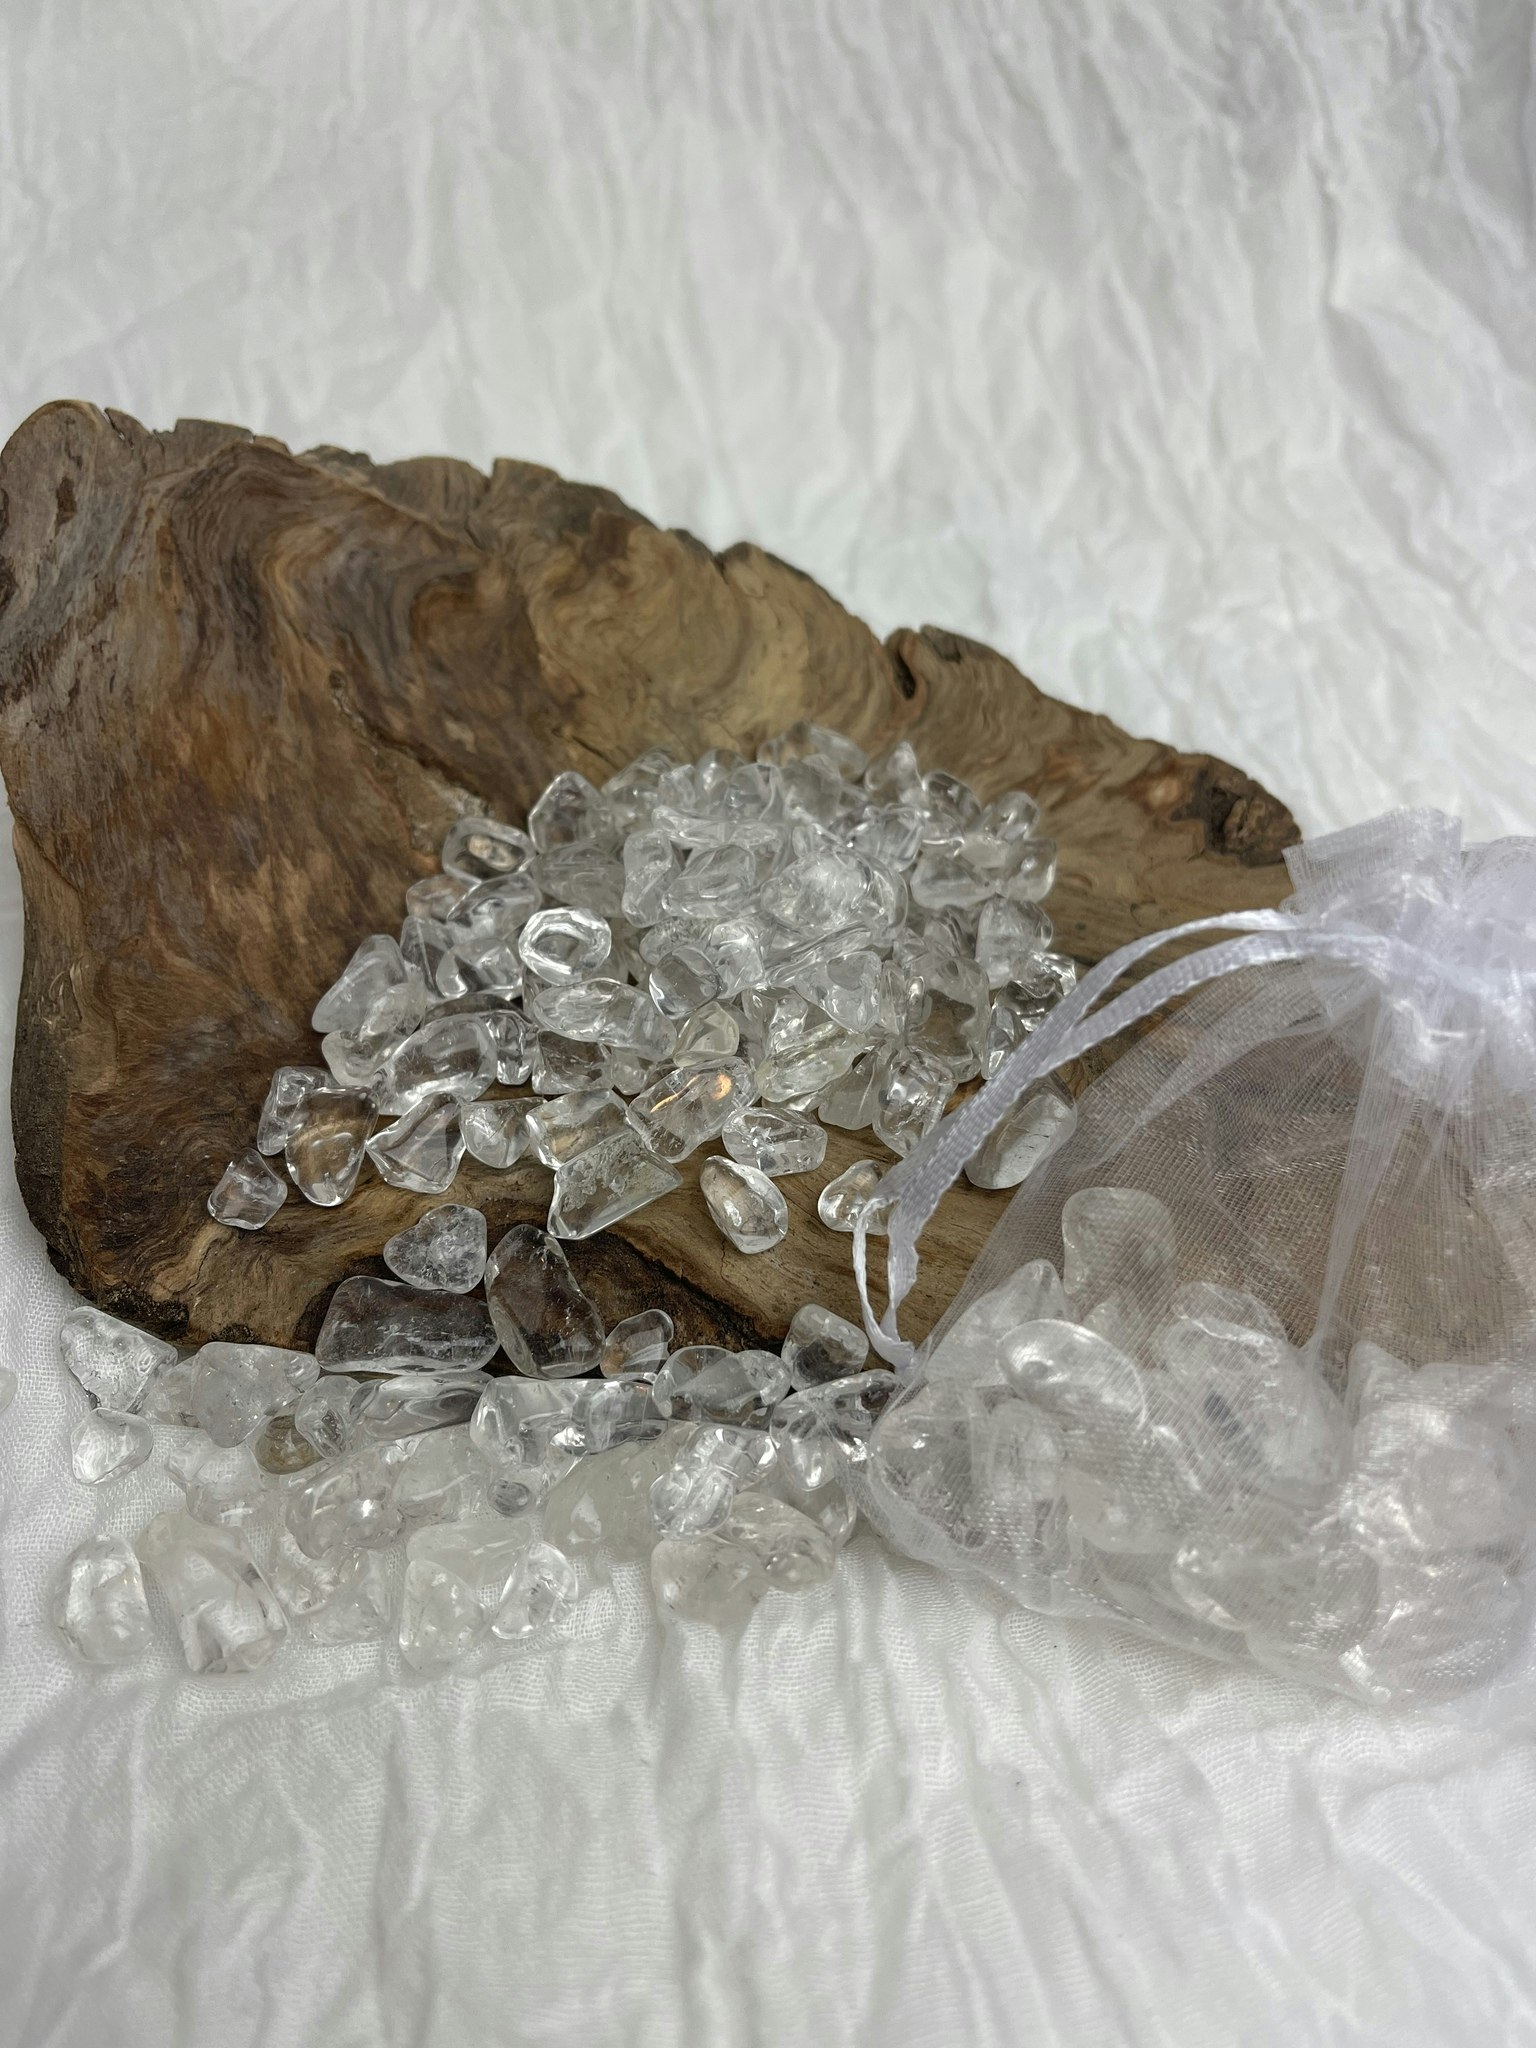 Kristallchips - för spelljars eller kristallgrids